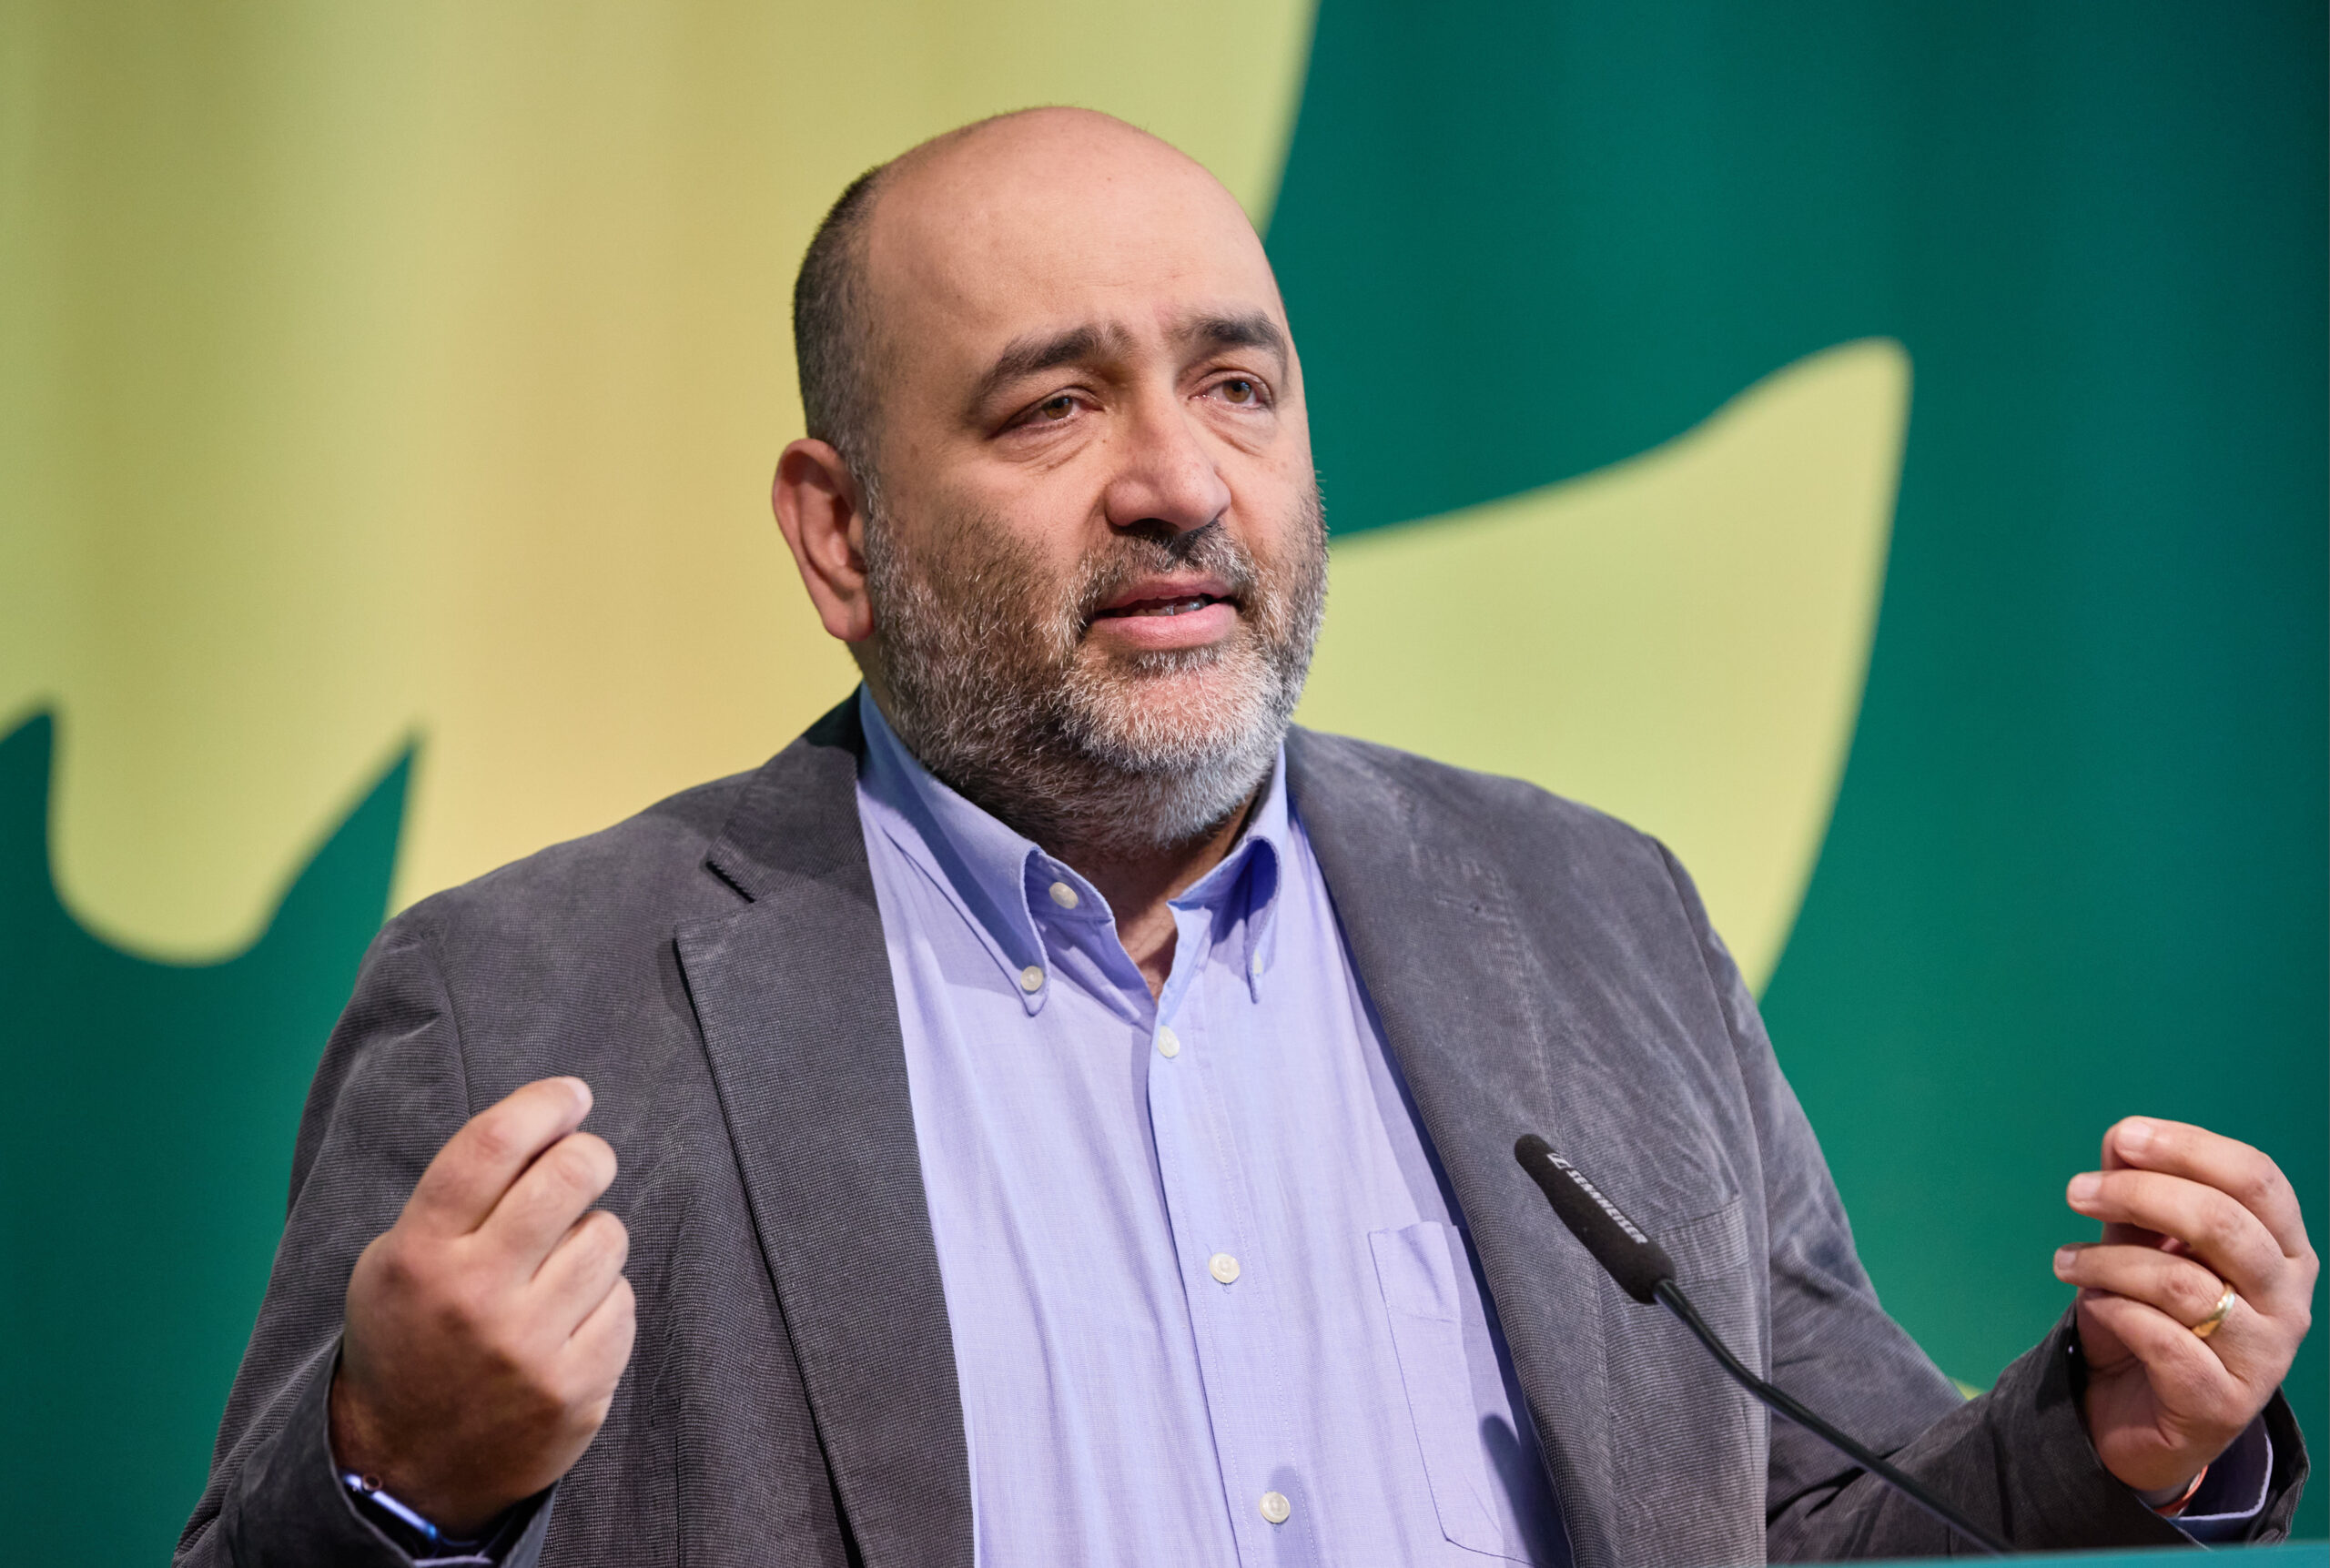 Der Bundesvorsitzende der Grünen, Omid Nouripour, warnte auf der Landesmitgliederversammlung seiner Partei vor dem Erstarken der AfD.